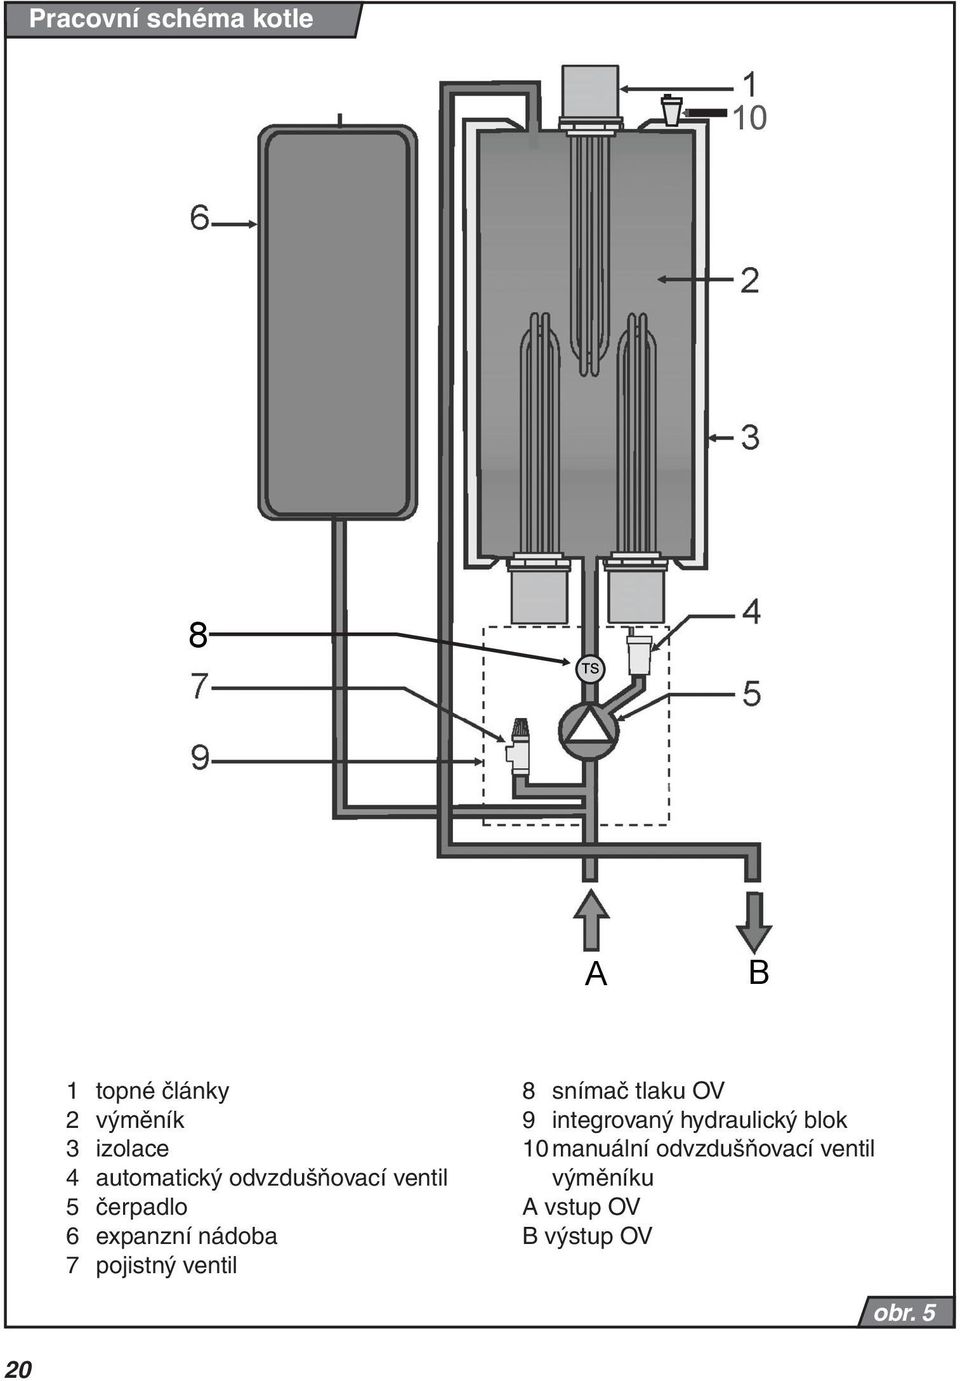 pojistný ventil 8 snímač tlaku OV 9 integrovaný hydraulický blok